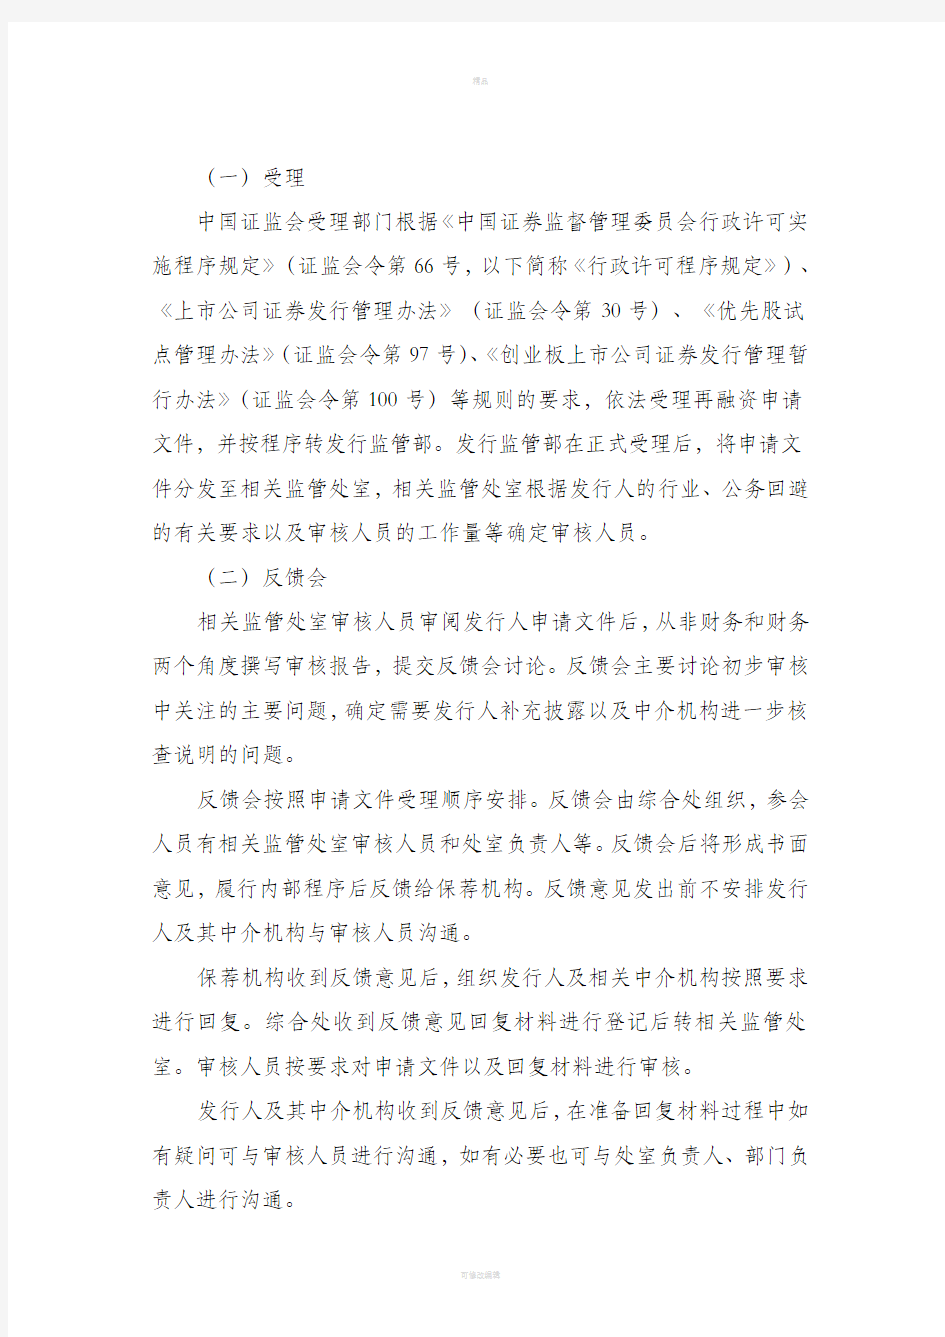 中国证监会发行监管部再融资审核工作流程